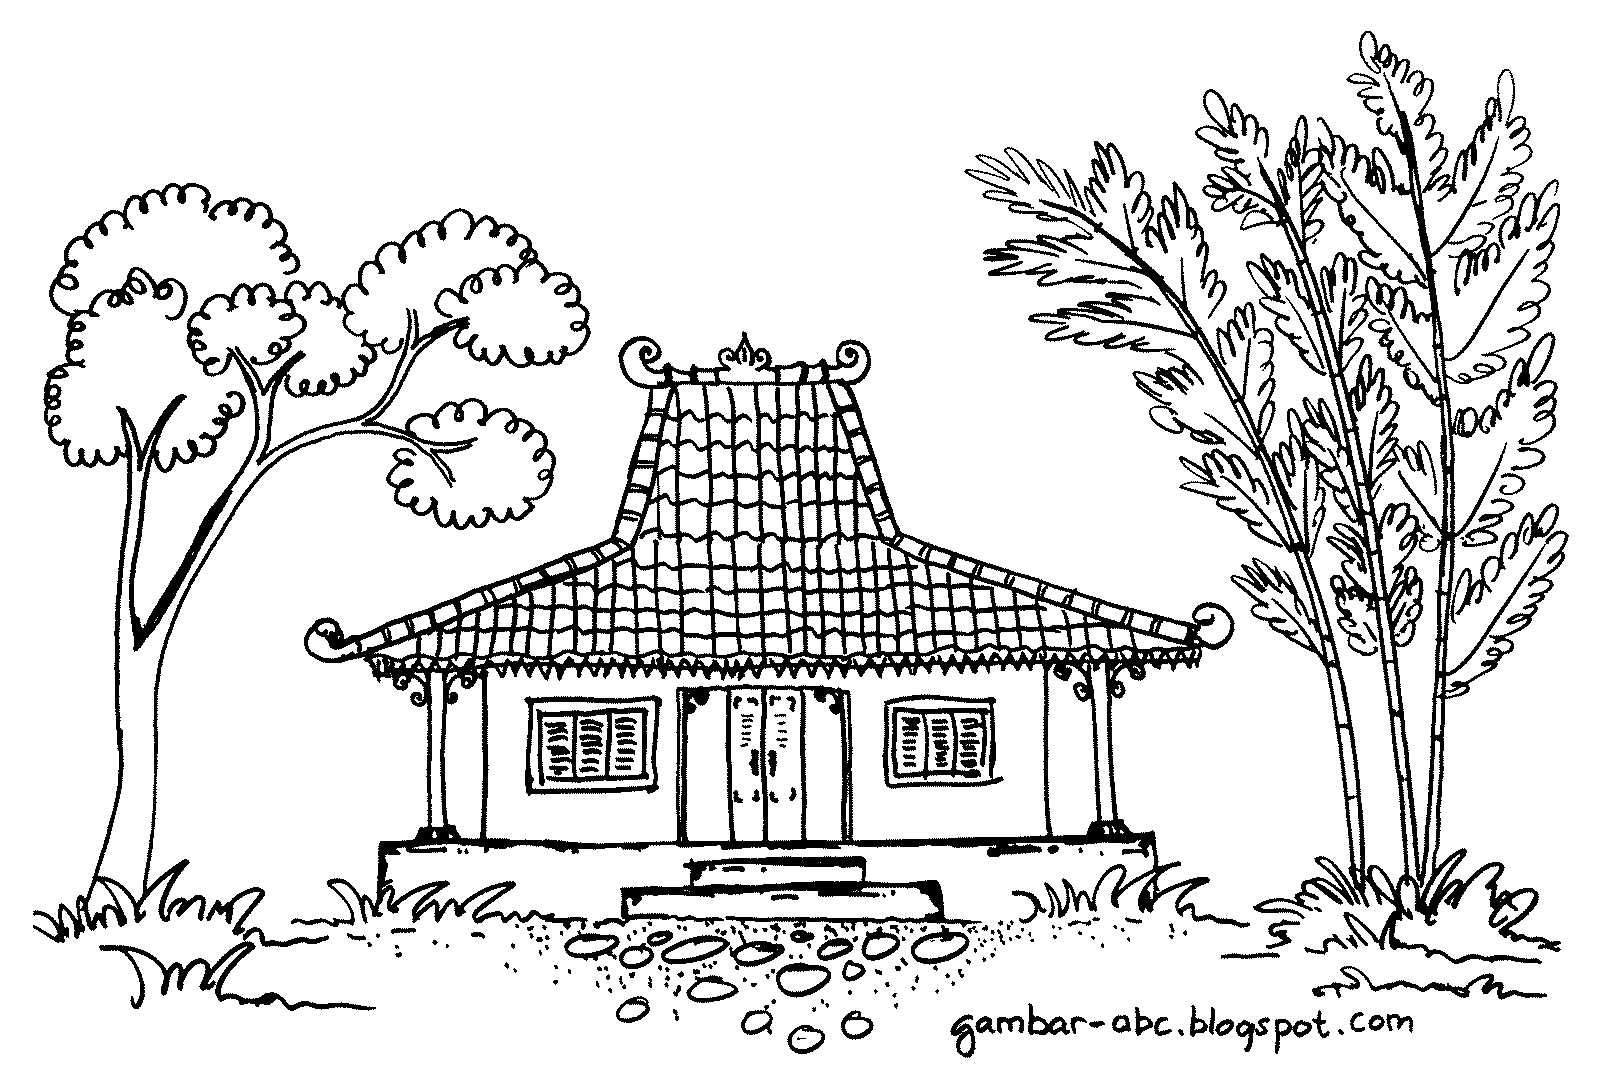 Gambar Rumah Halloween. gambar desain rumah ala desa 